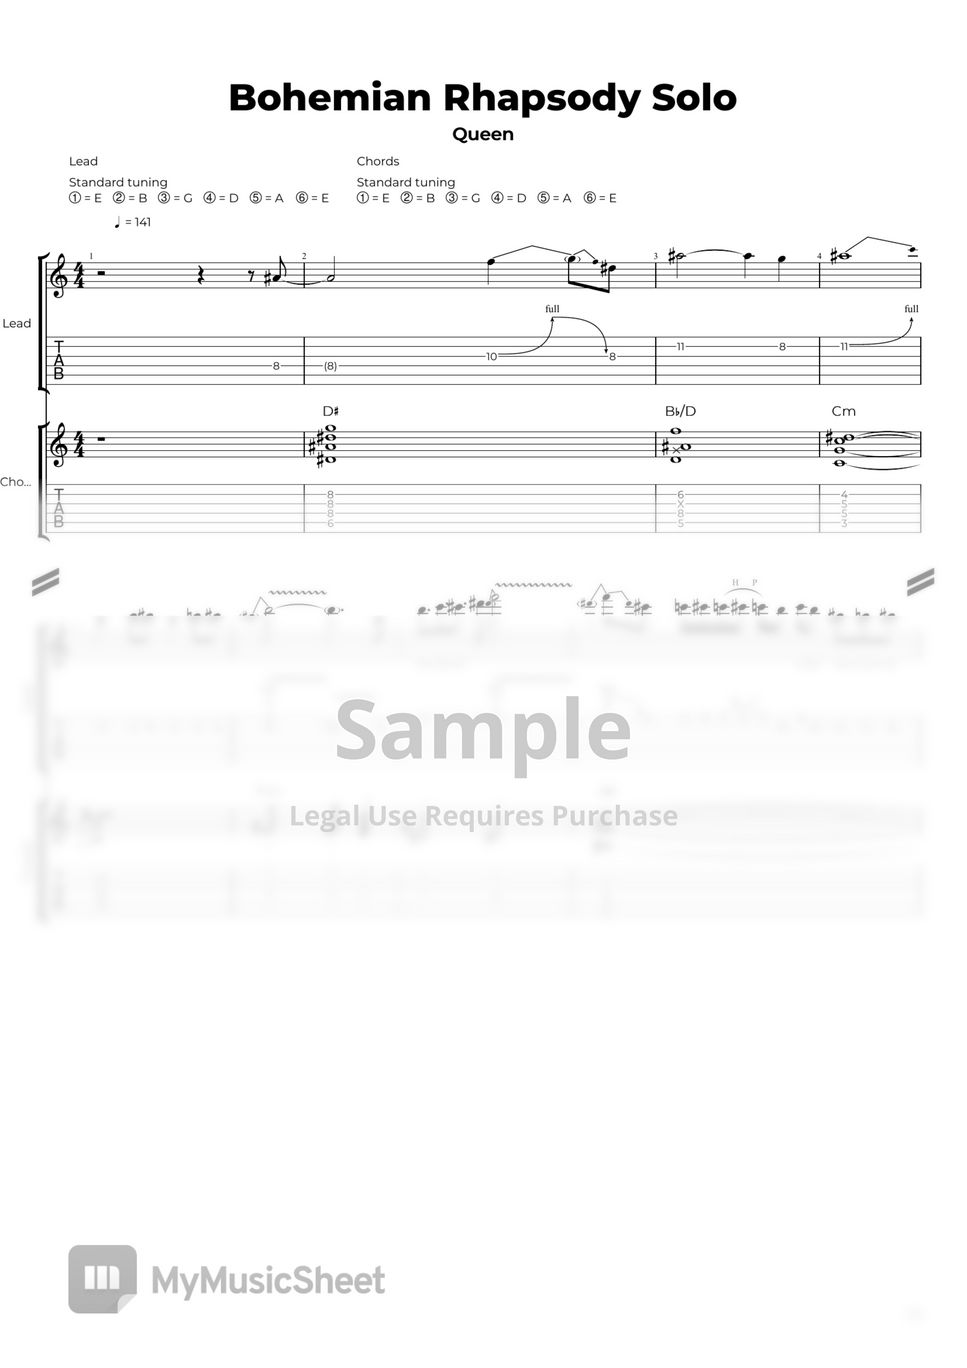 Queen - Bohemian Rhapsody Solo Sheets by Nikola Gugoski